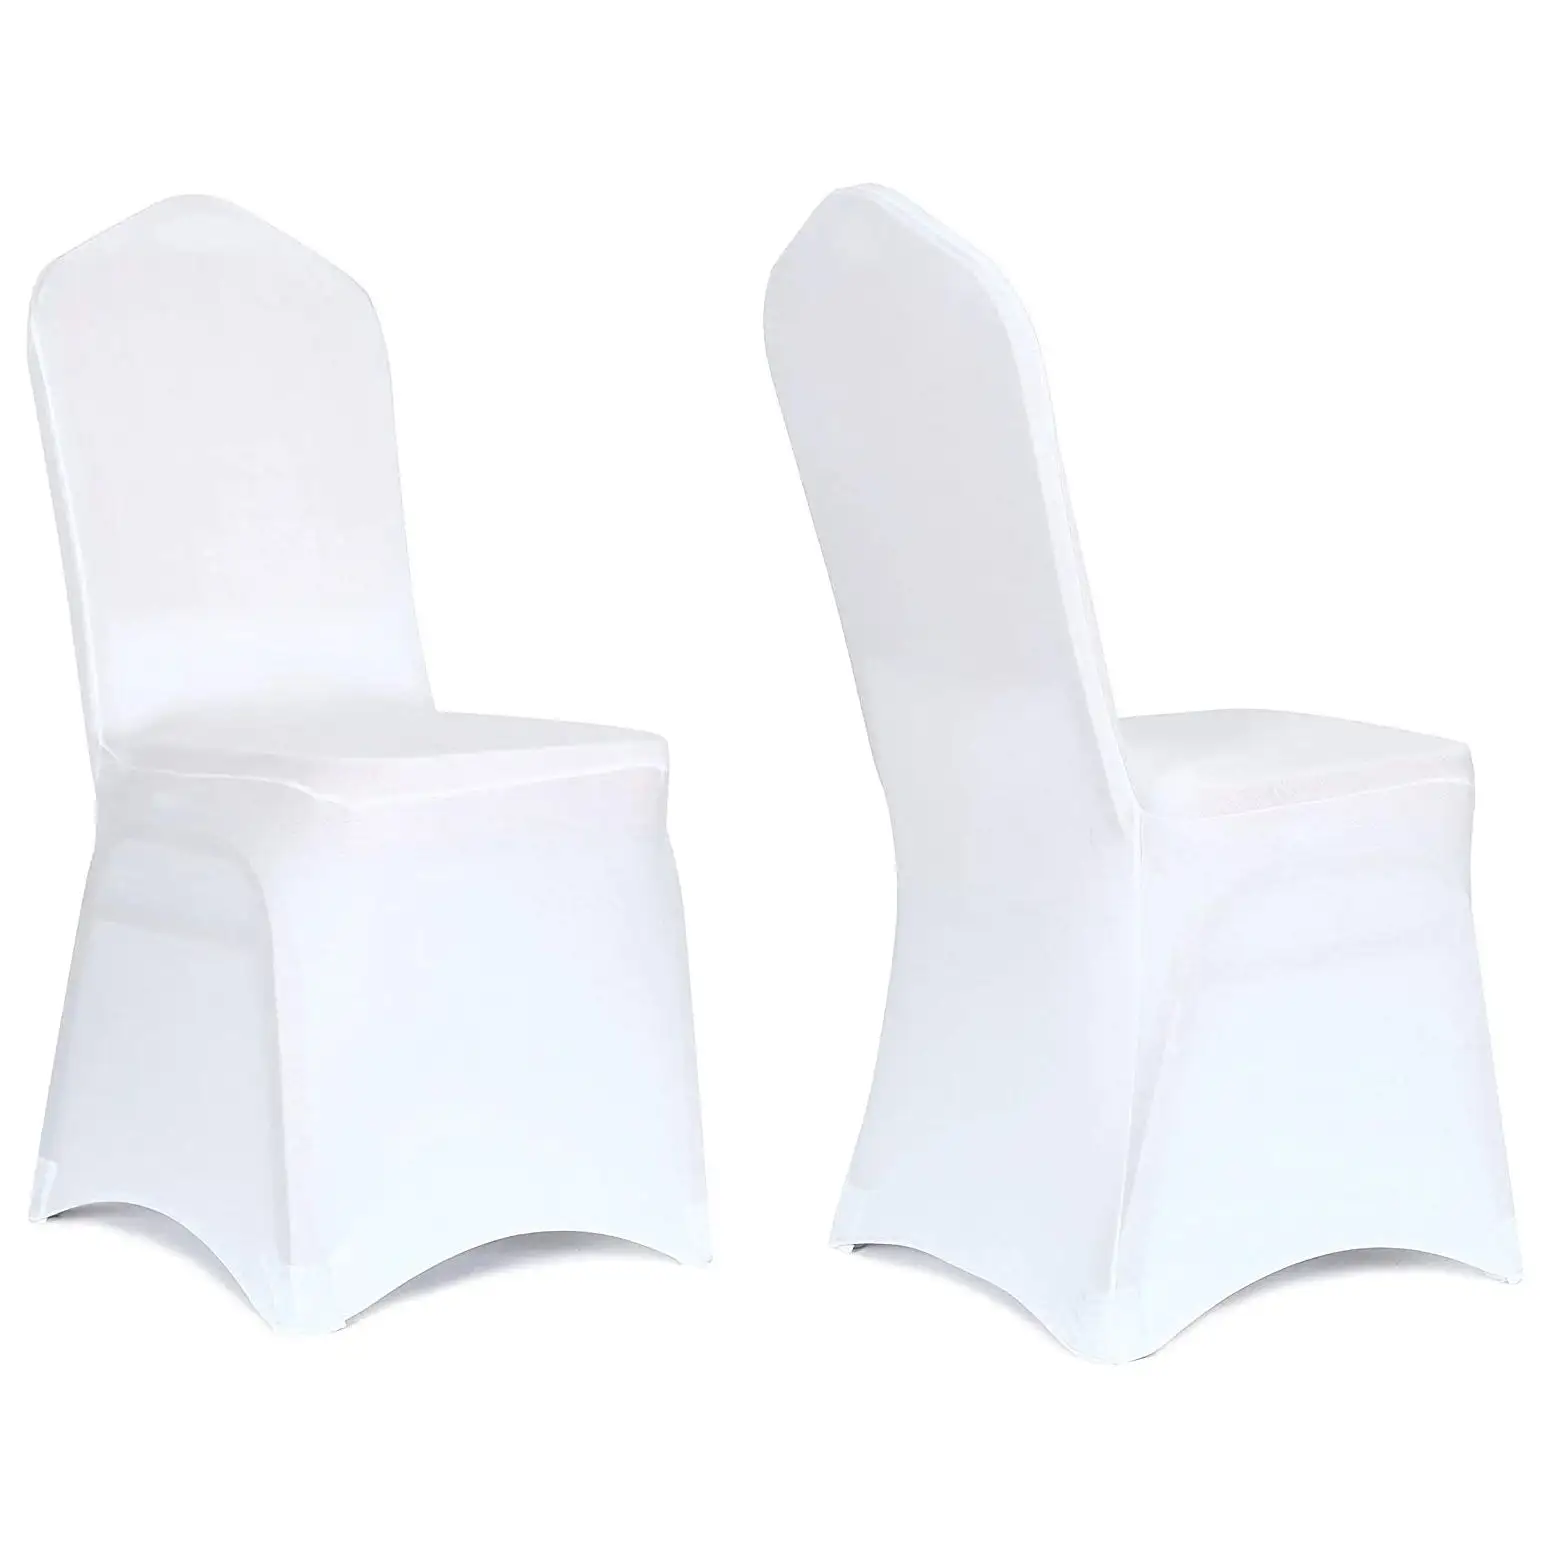 100 قطعة بوليستر غطاء كرسي أبيض انزلاقي حفلات مأدبة زفاف مطاطي أغطية كراسي سبانديكس للمناسبات